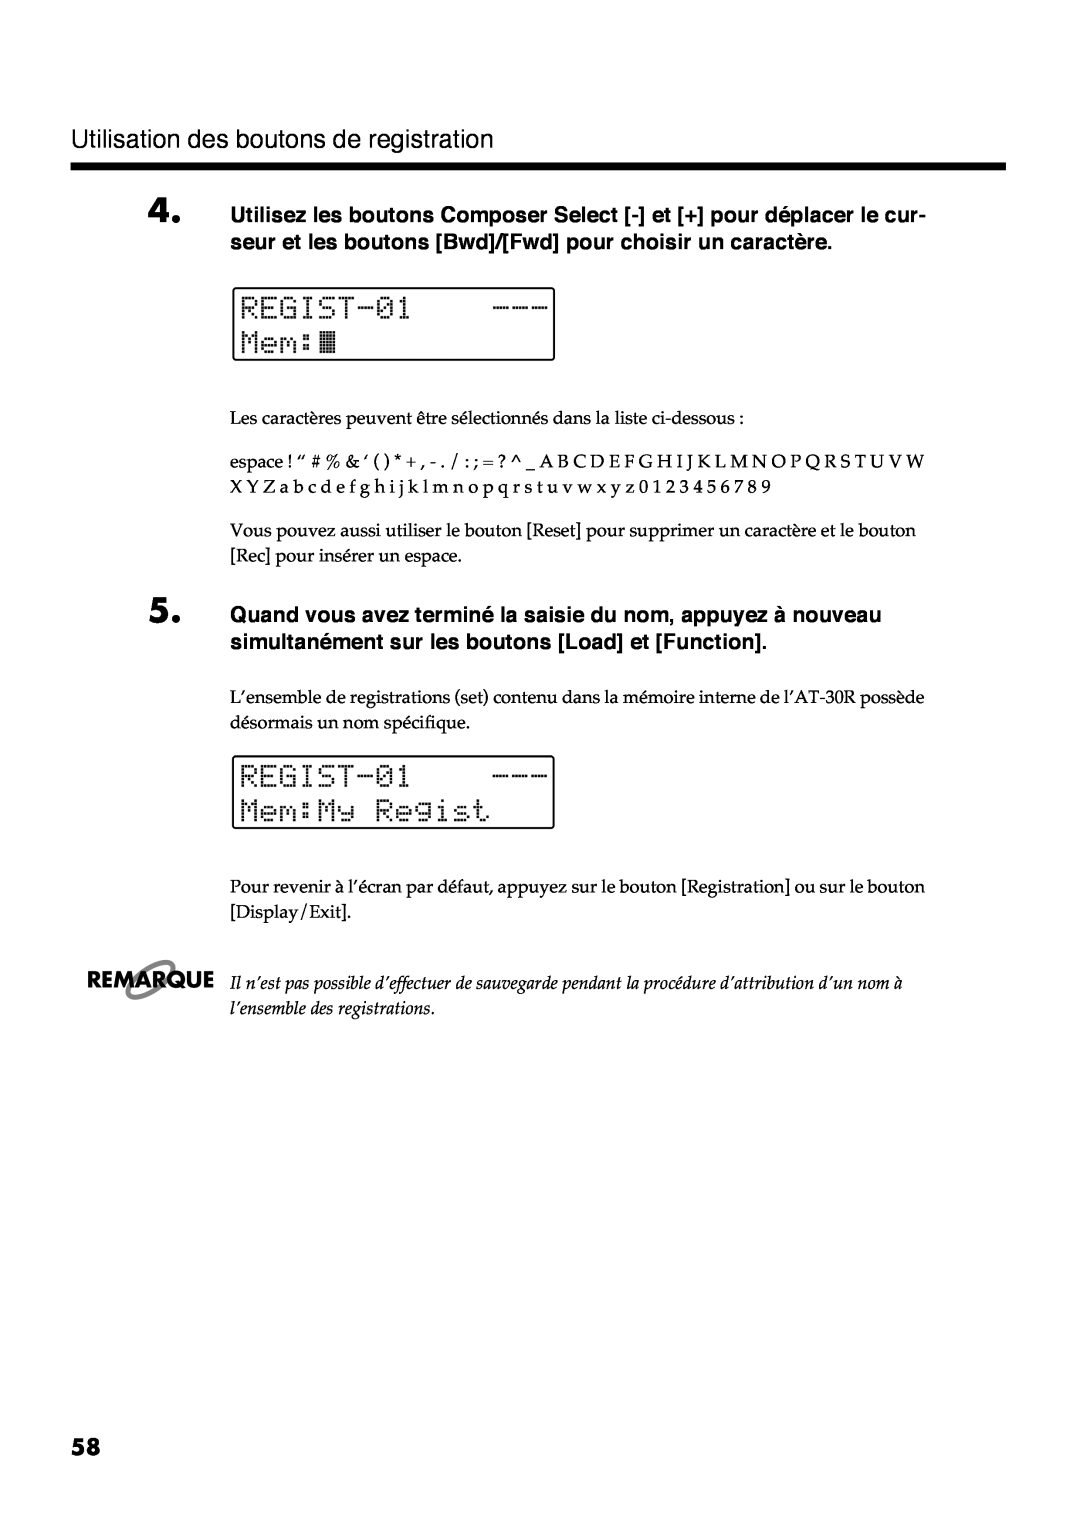 Roland AT30R manual Utilisation des boutons de registration, 1##8 